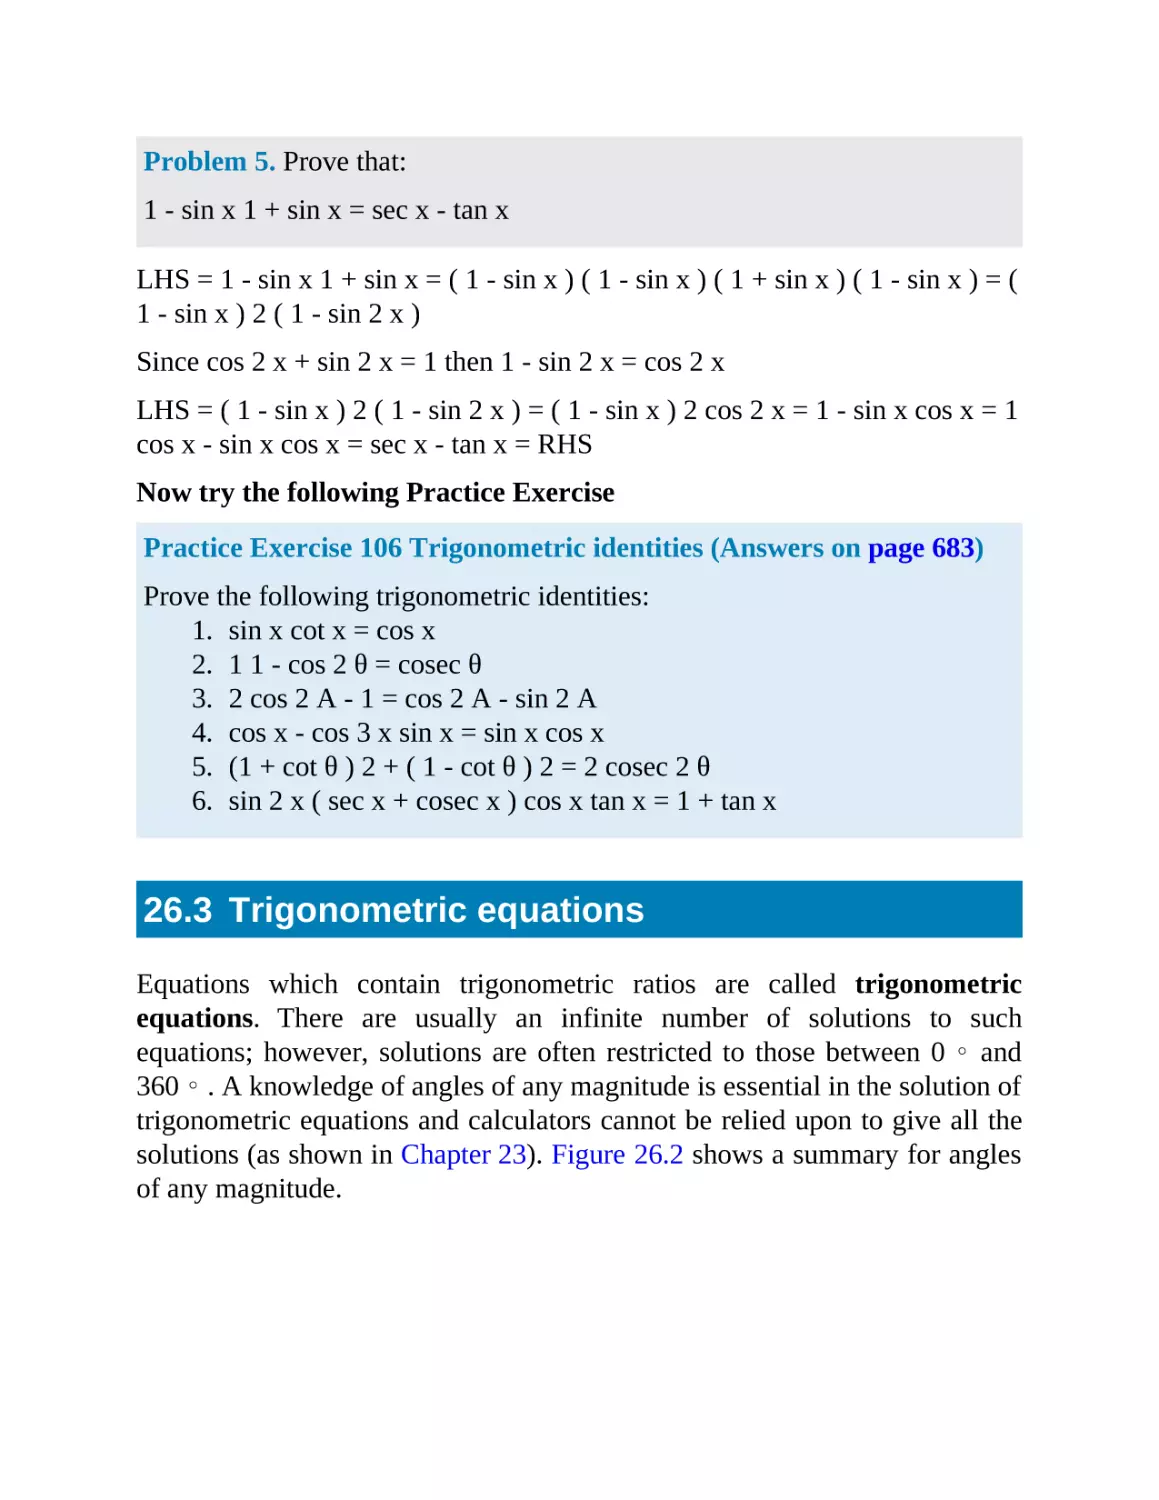 26.3 Trigonometric equations